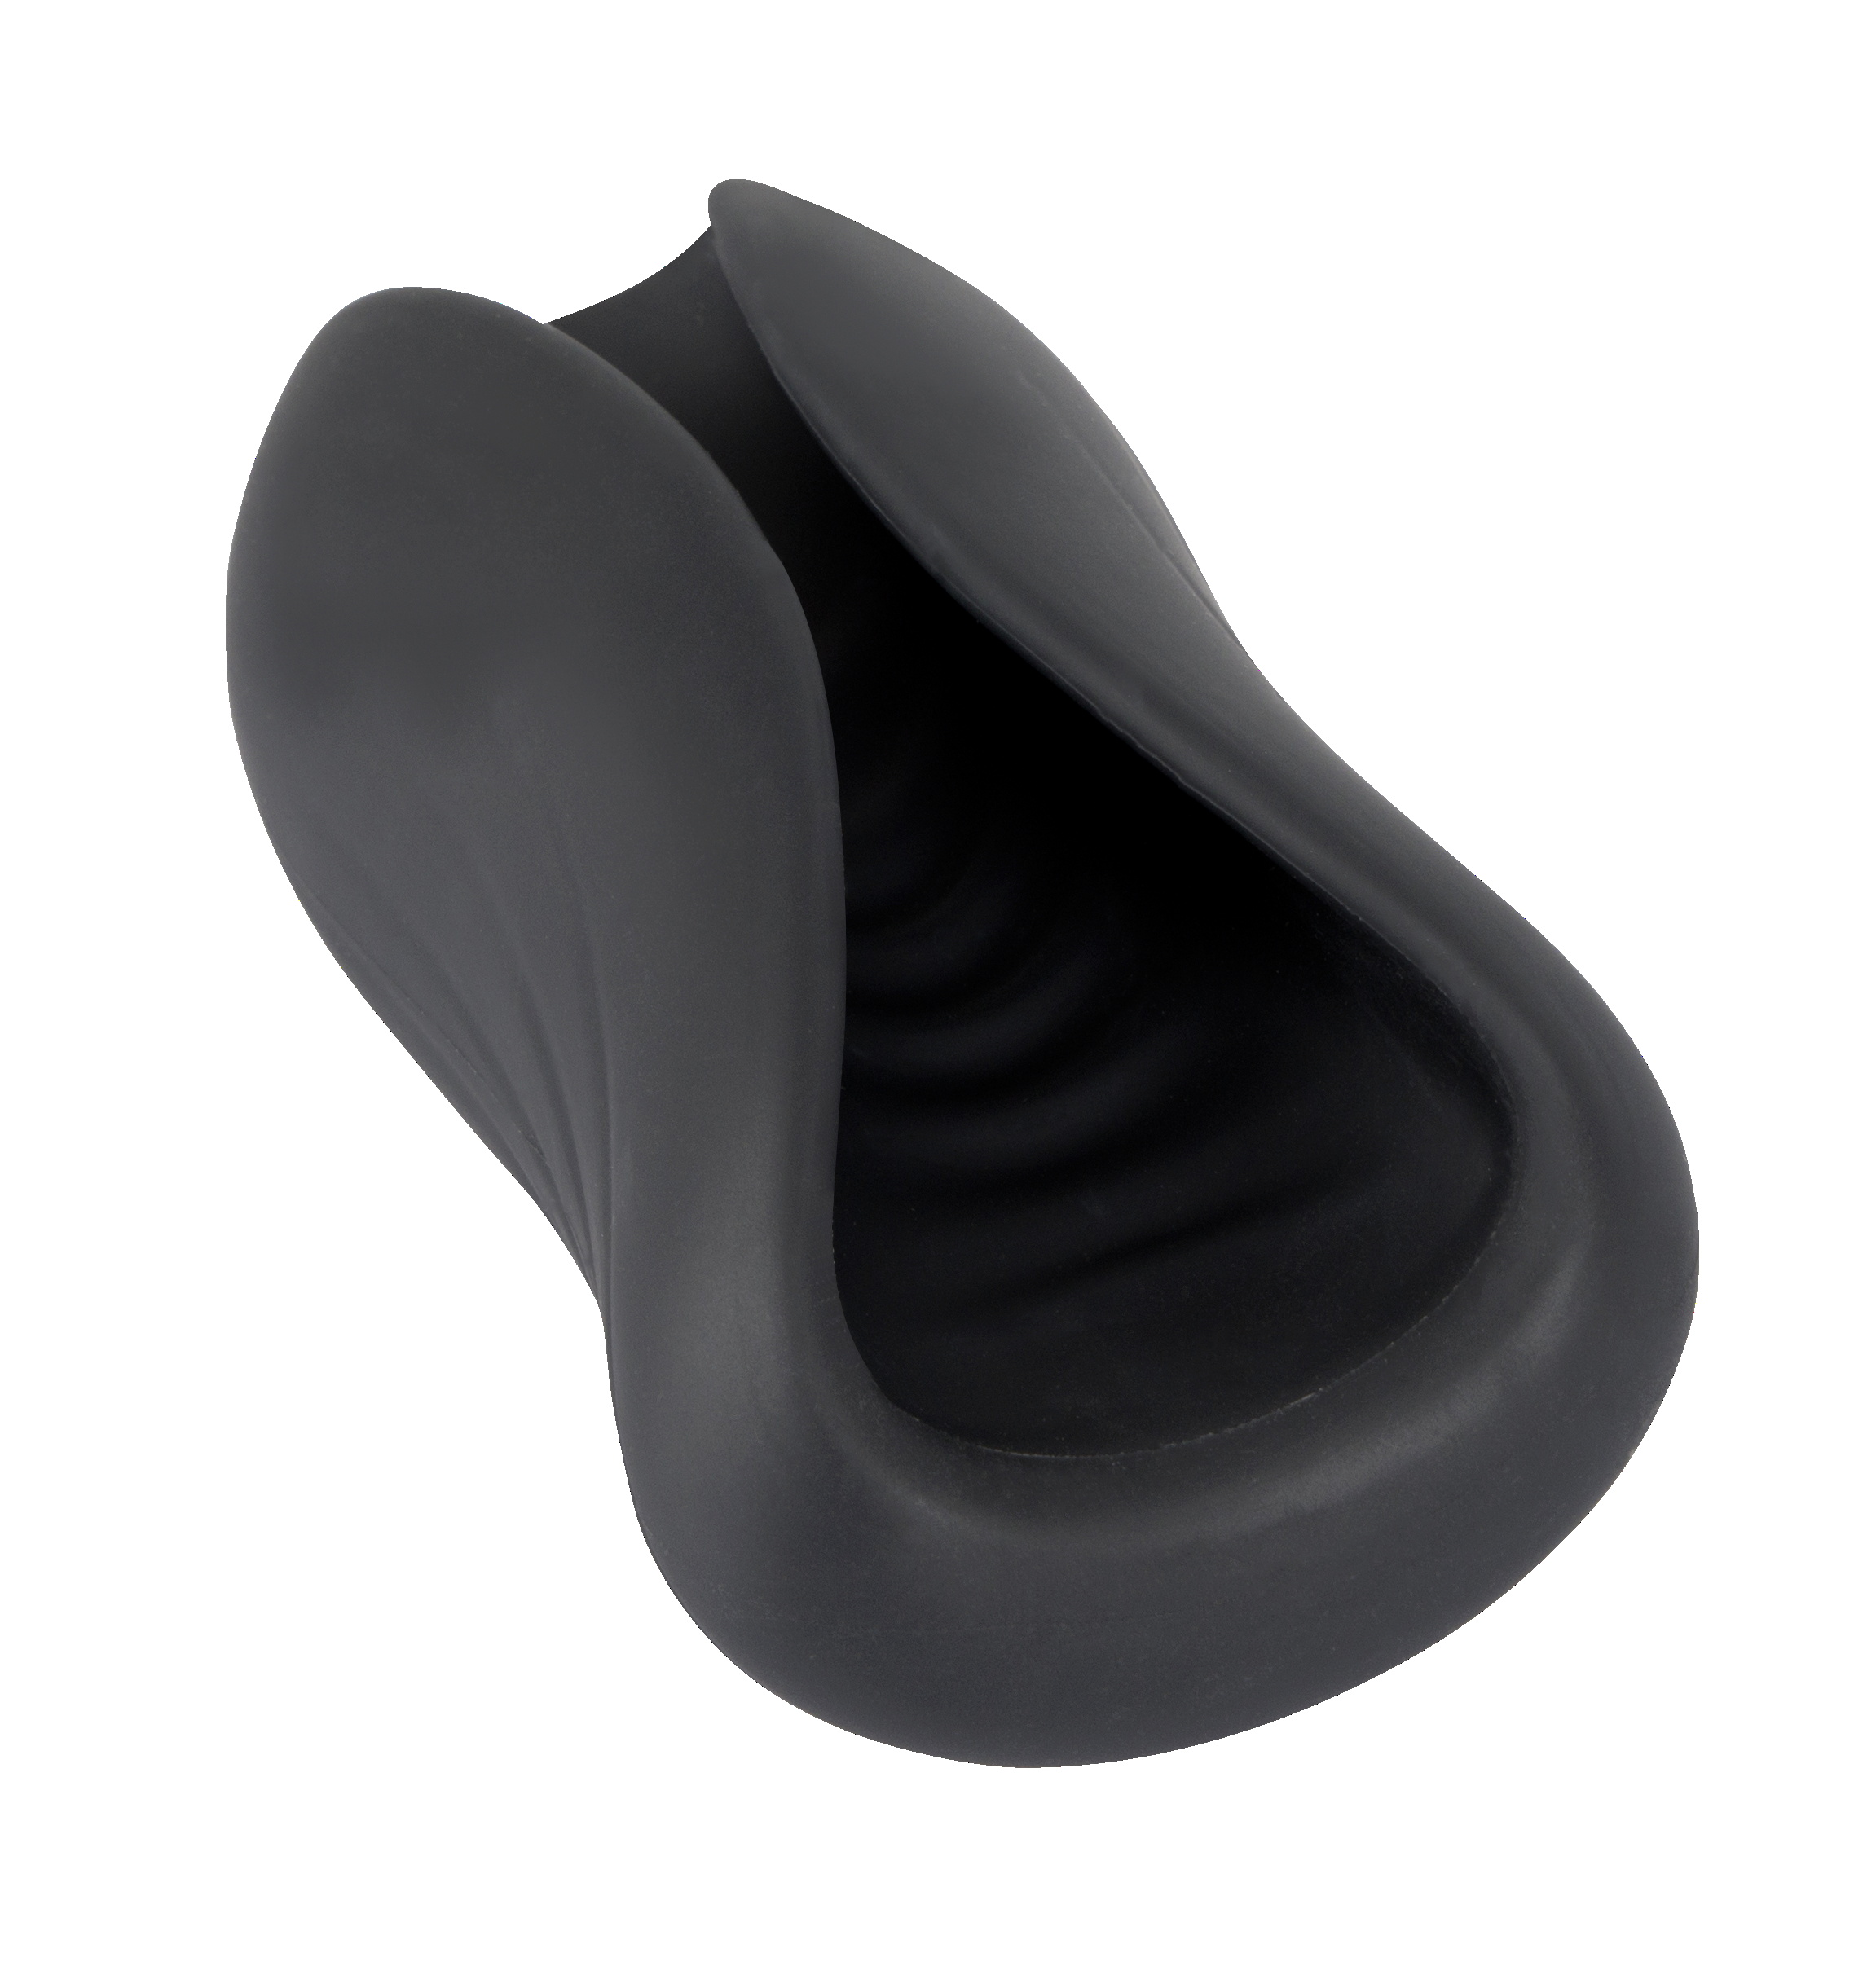 gaine masturbation ultra soft silicone vibrante marque rebel couleur noire